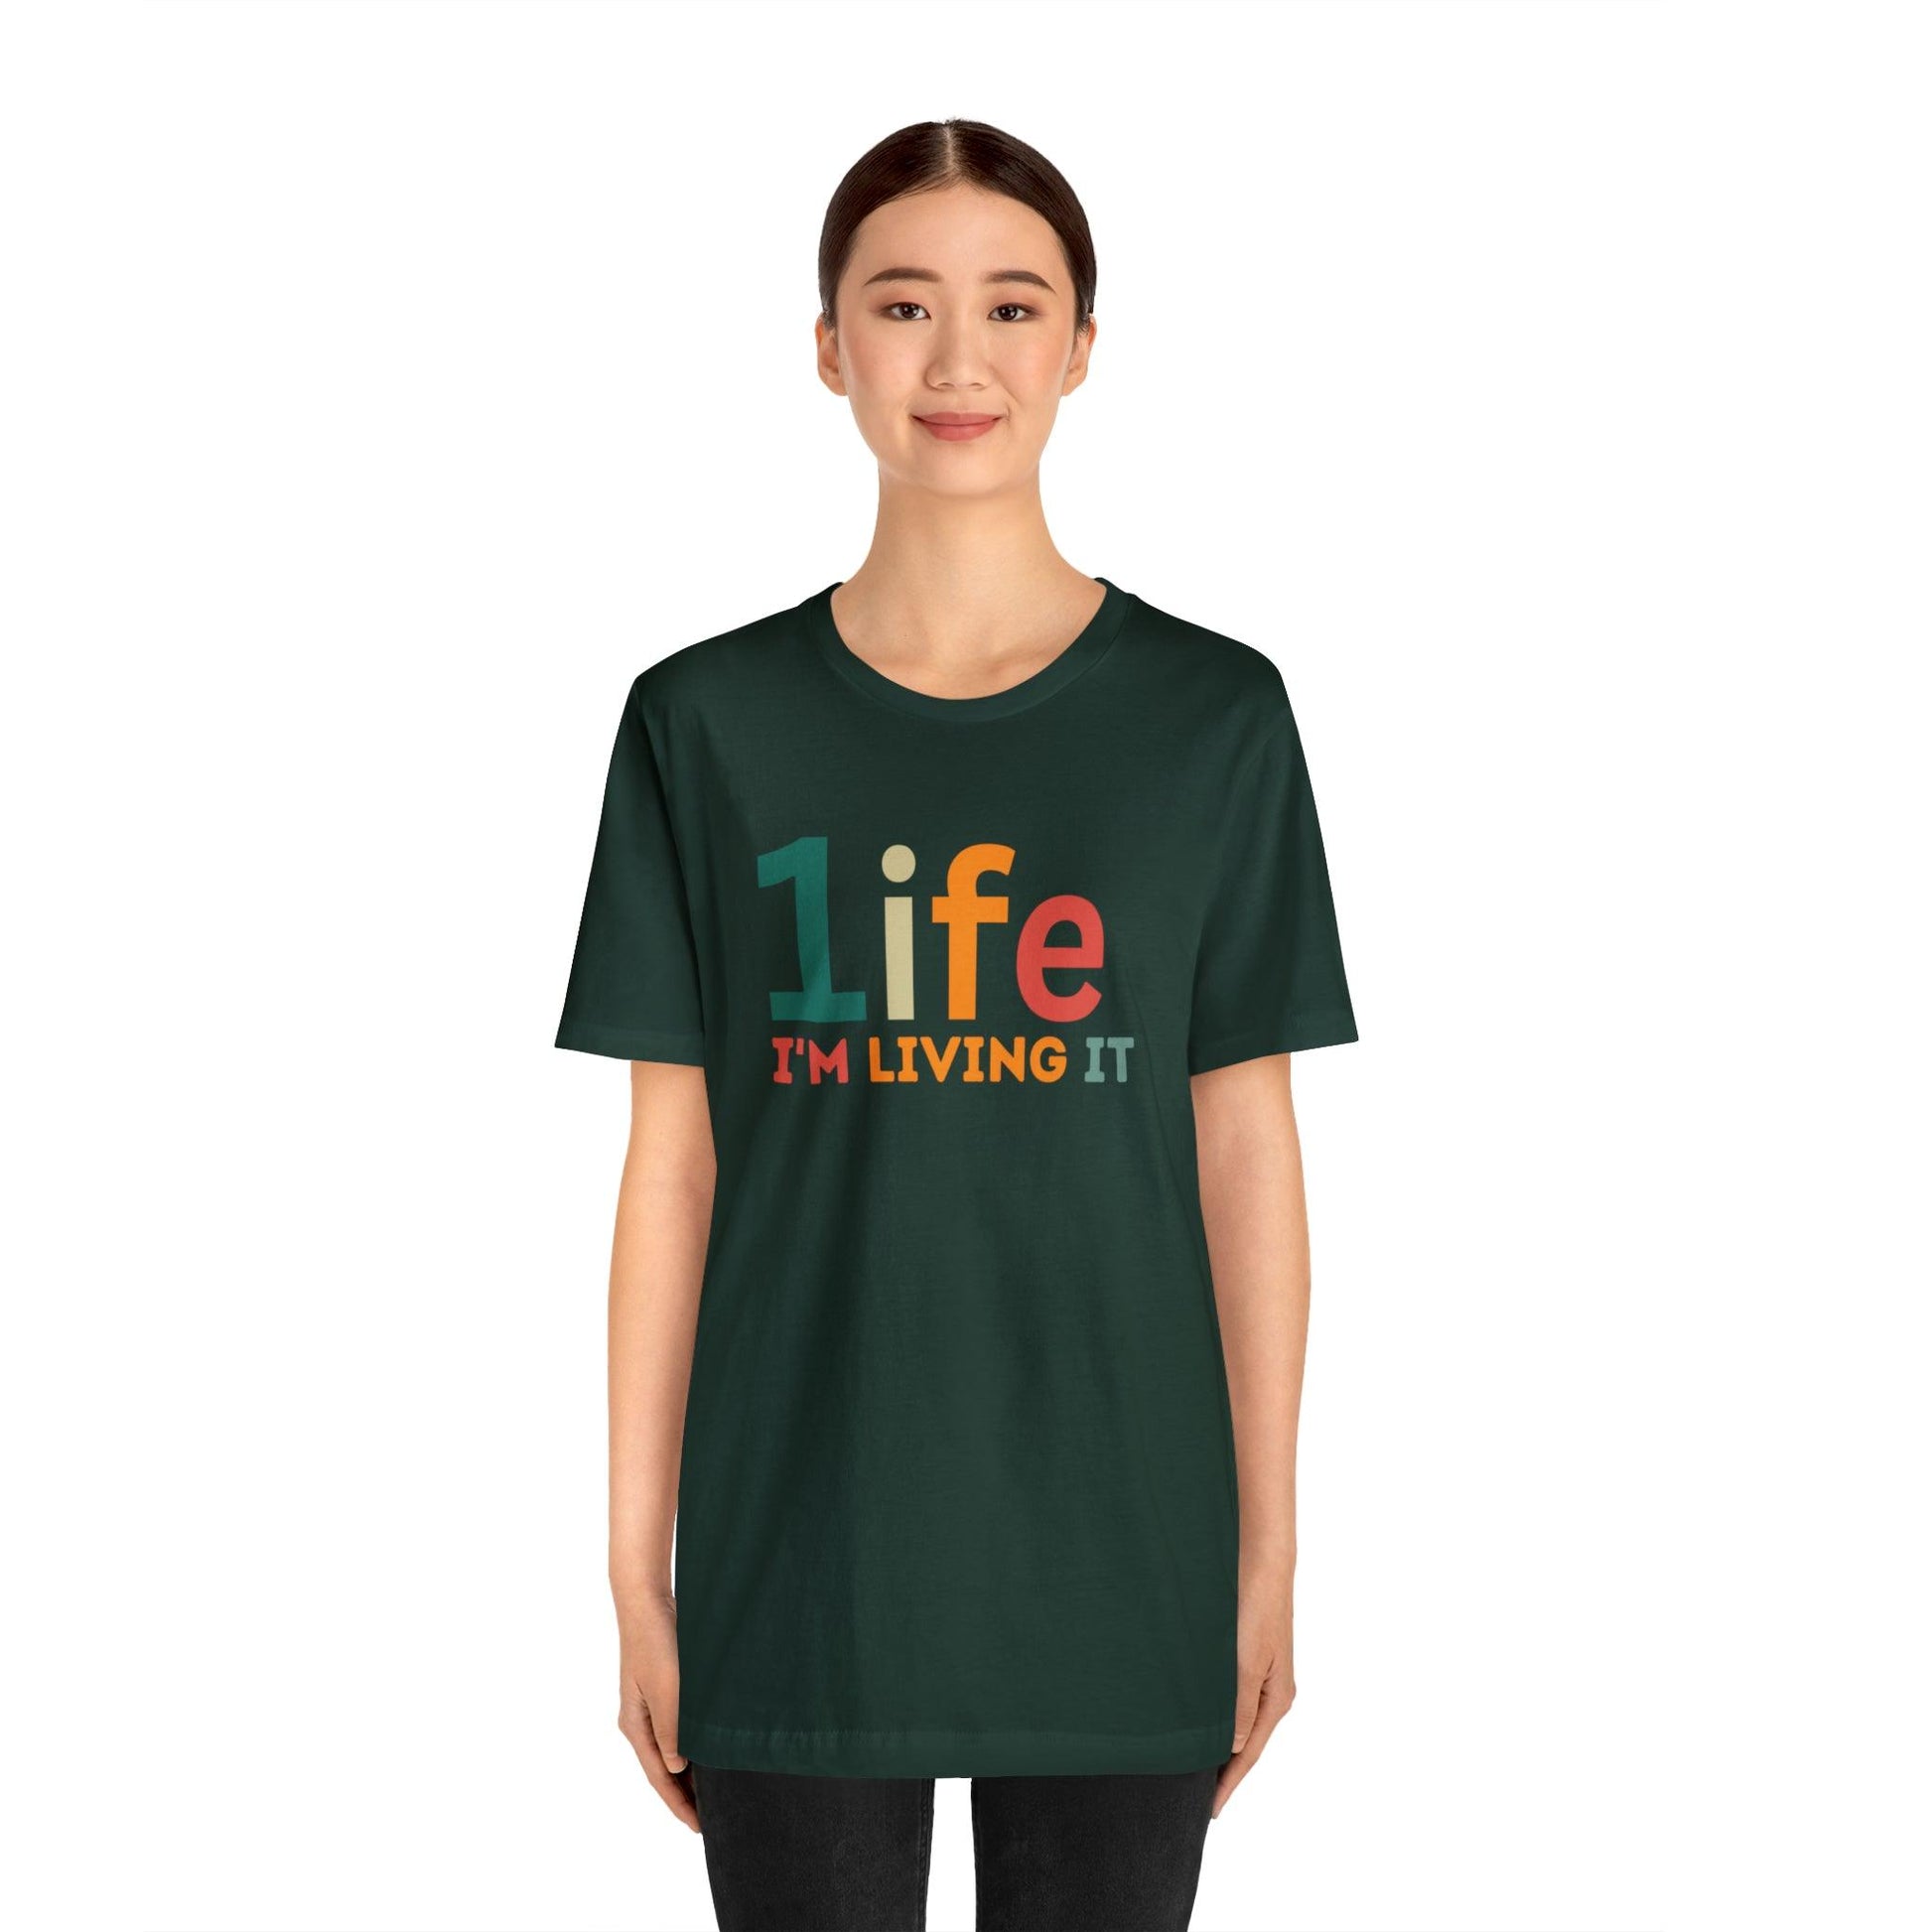 One life Shirt Retro 1life shirt Live Your Life You Only Have One Life To Live Retro Shirt - Giftsmojo